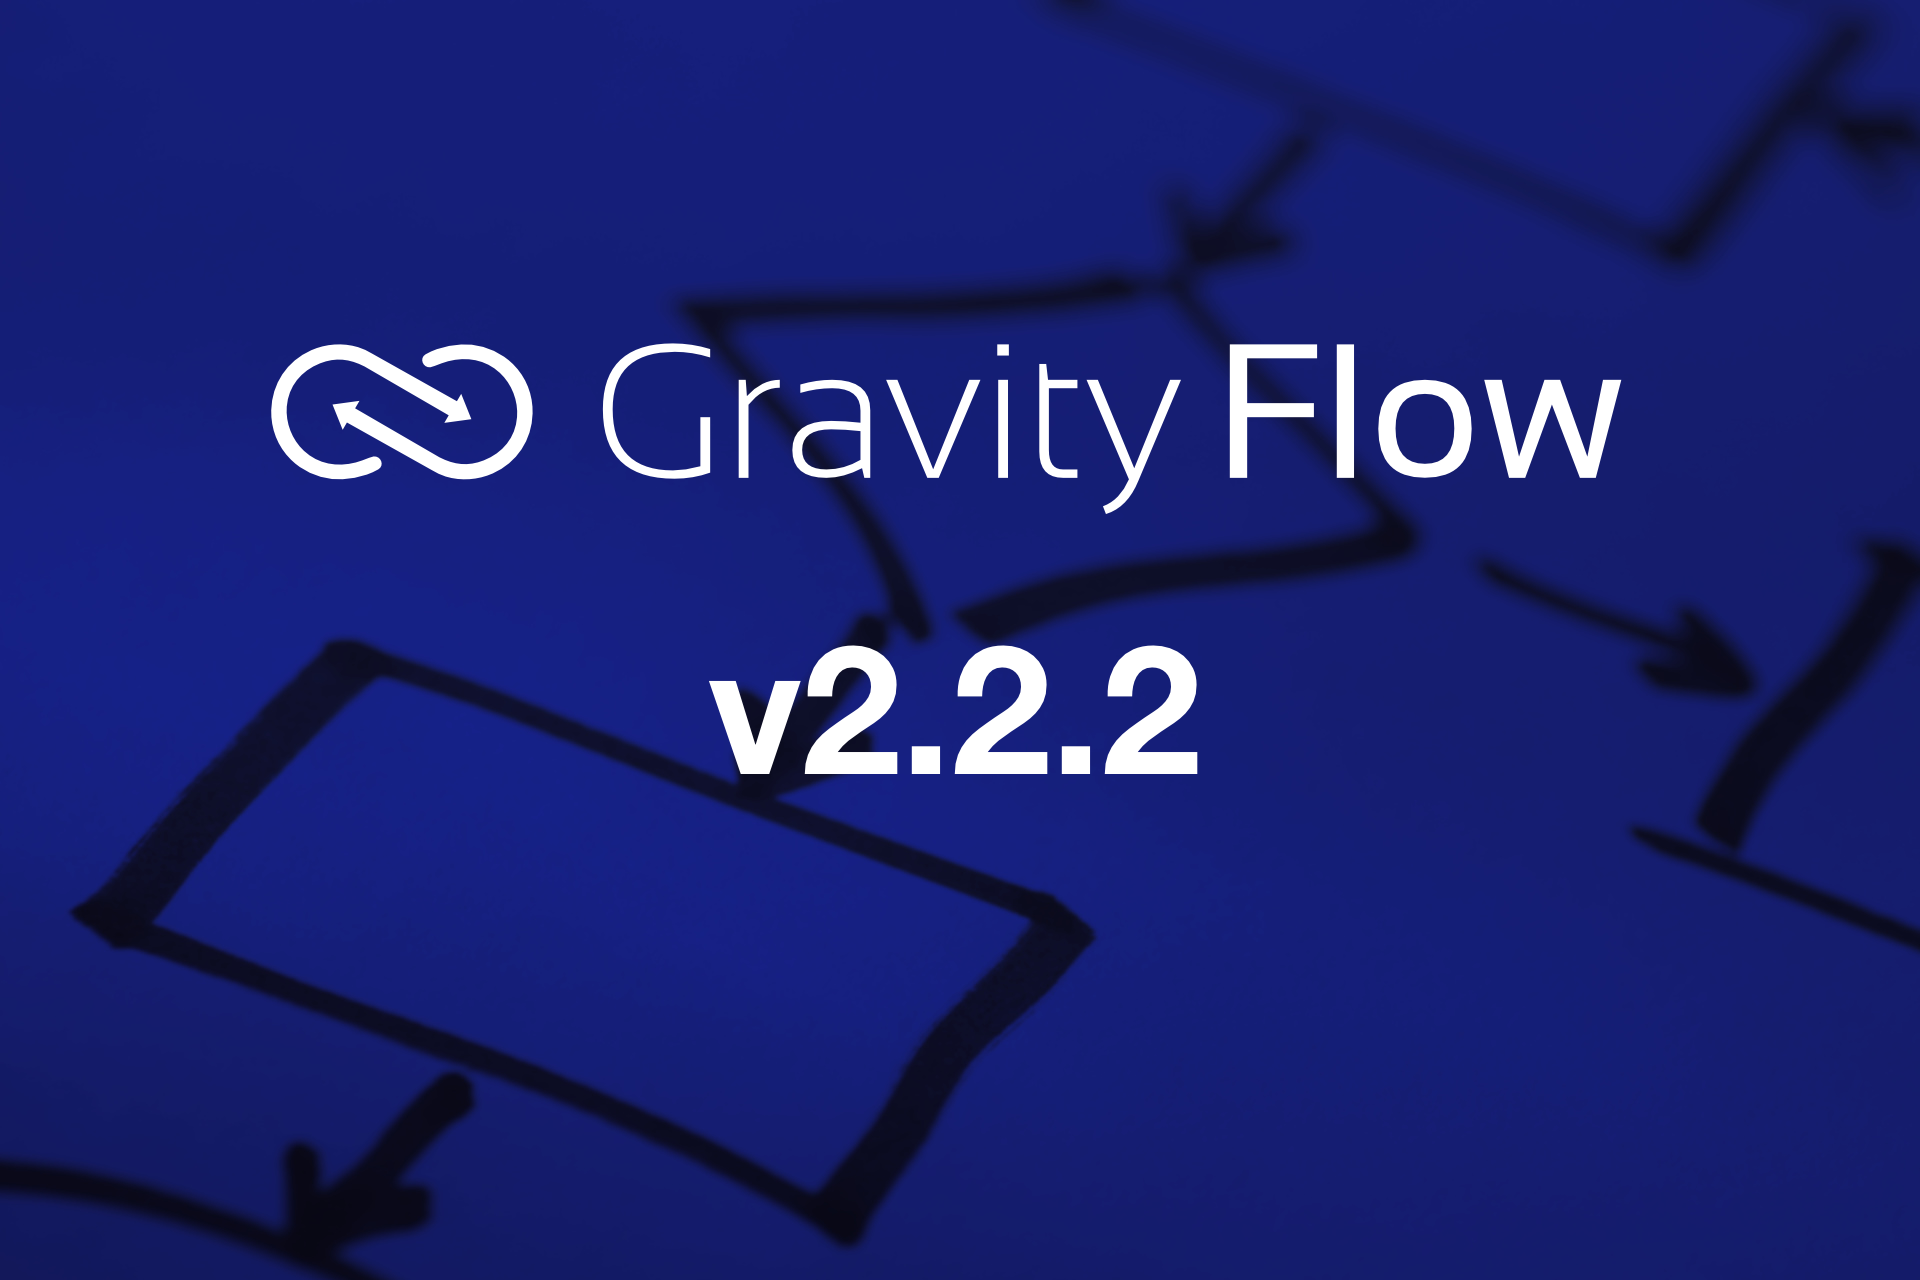 Gravity Flow v2.2.2 Released